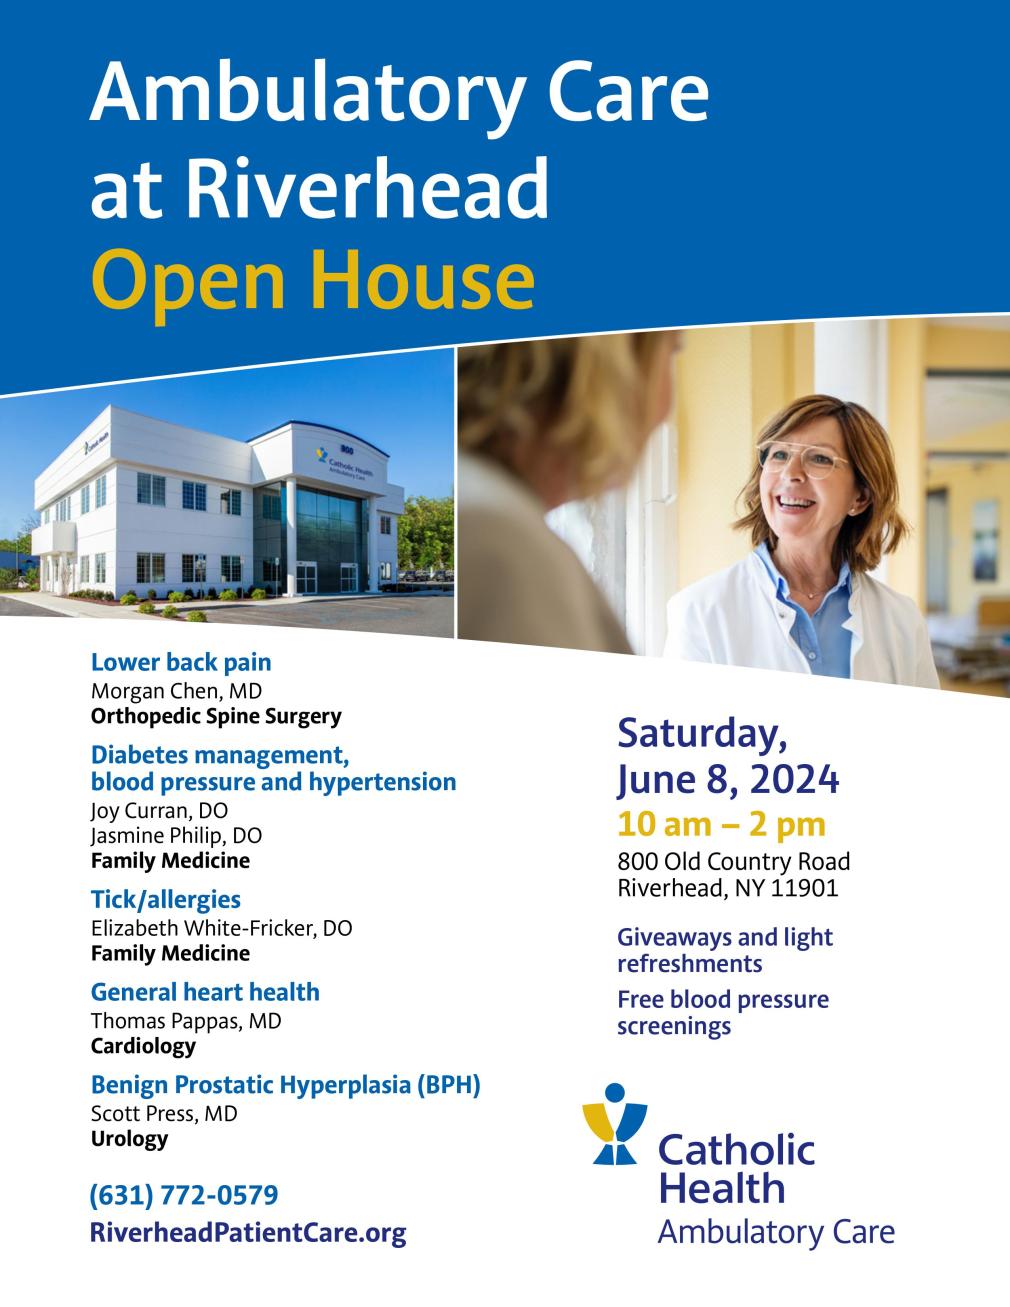 Riverhead open house flyer